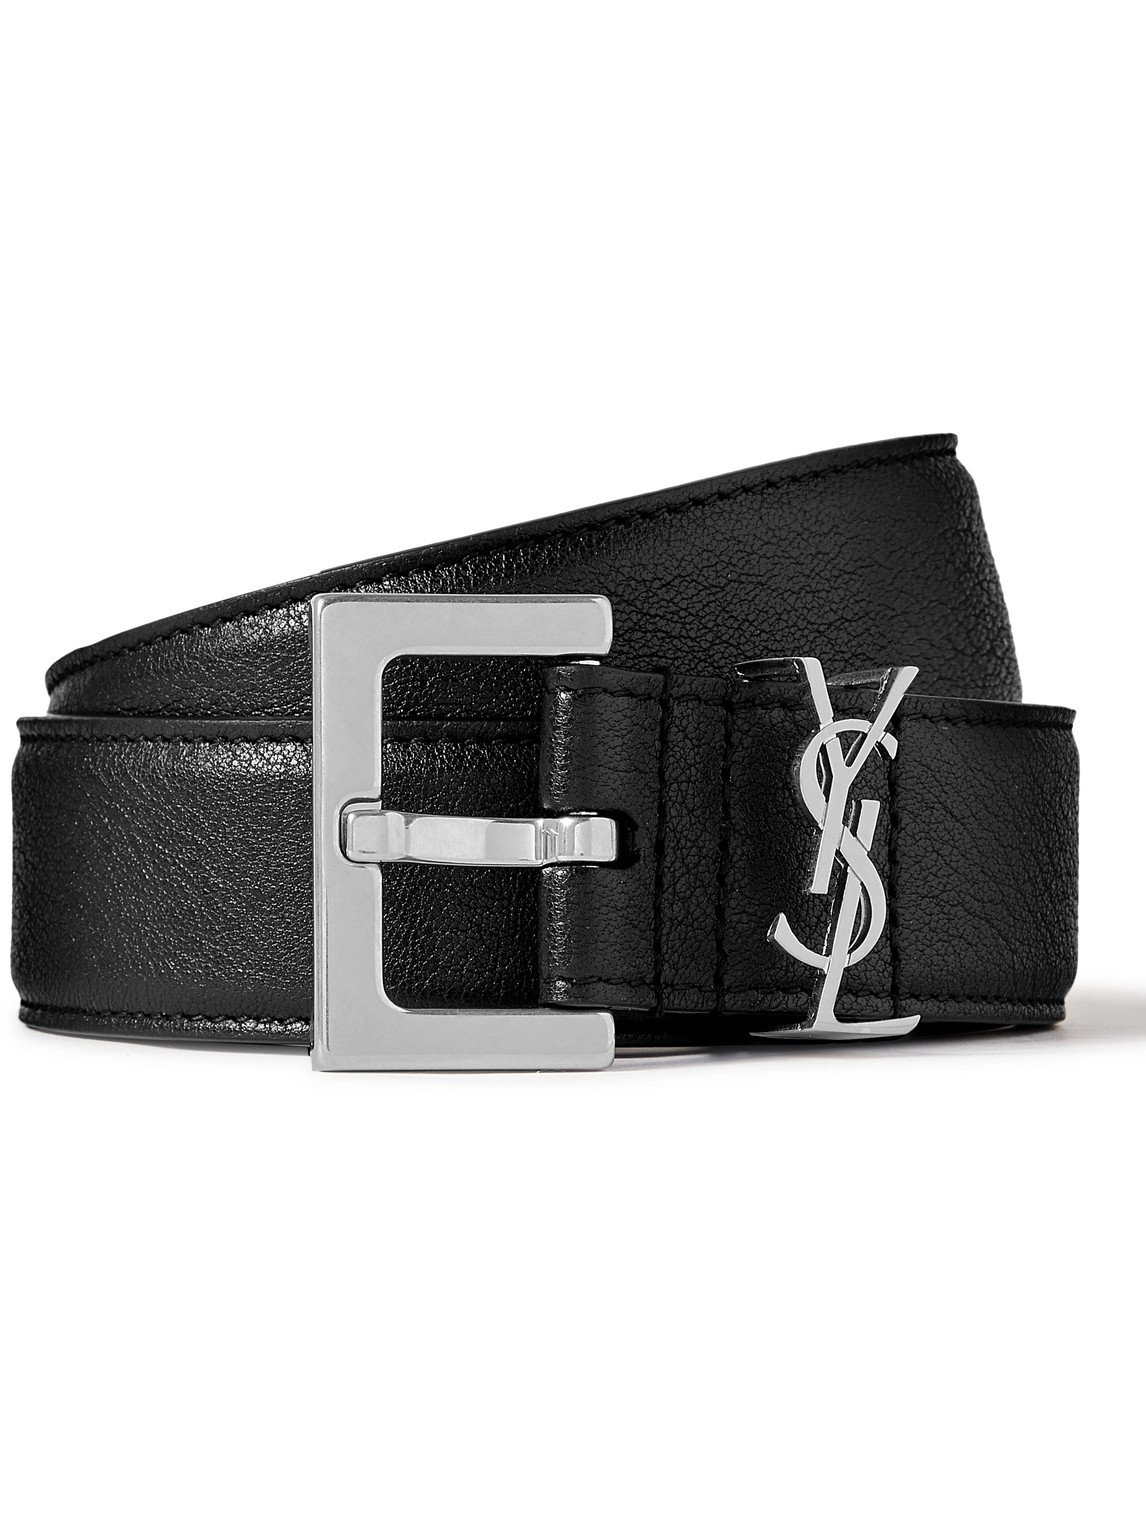 Saint Laurent Monogram Belt in Smooth Leather - Black - Belts